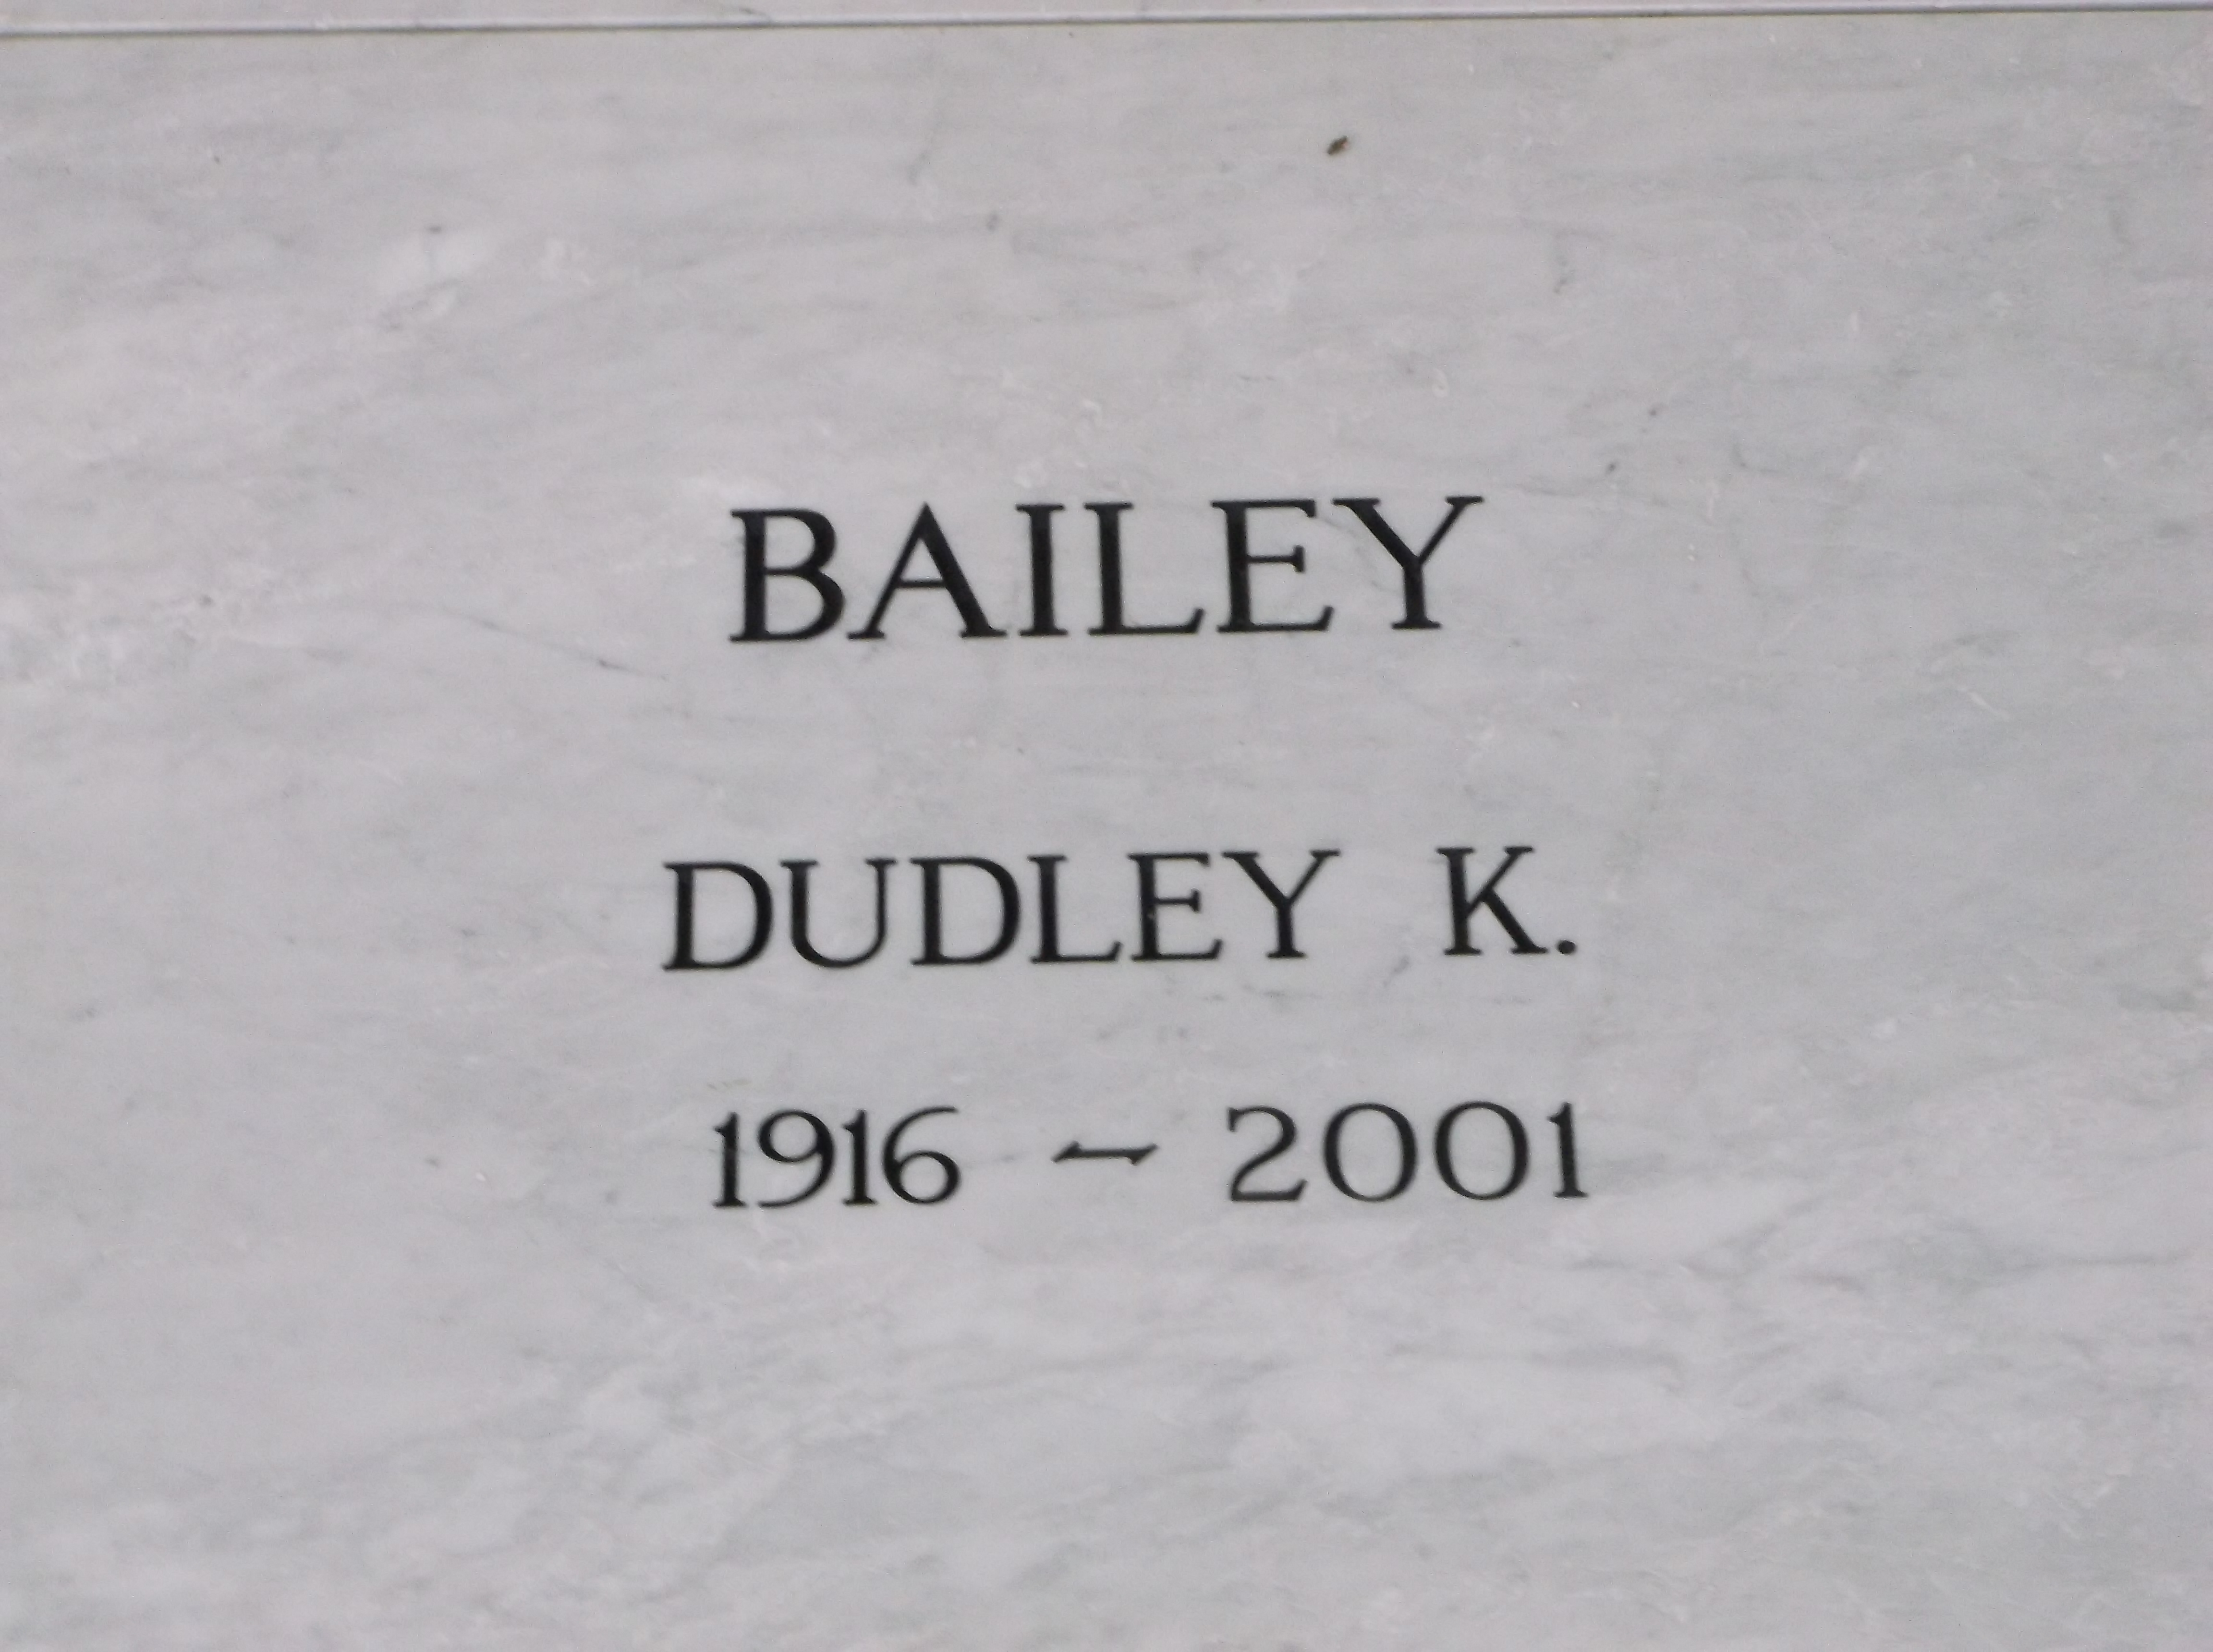 Dudley K Bailey